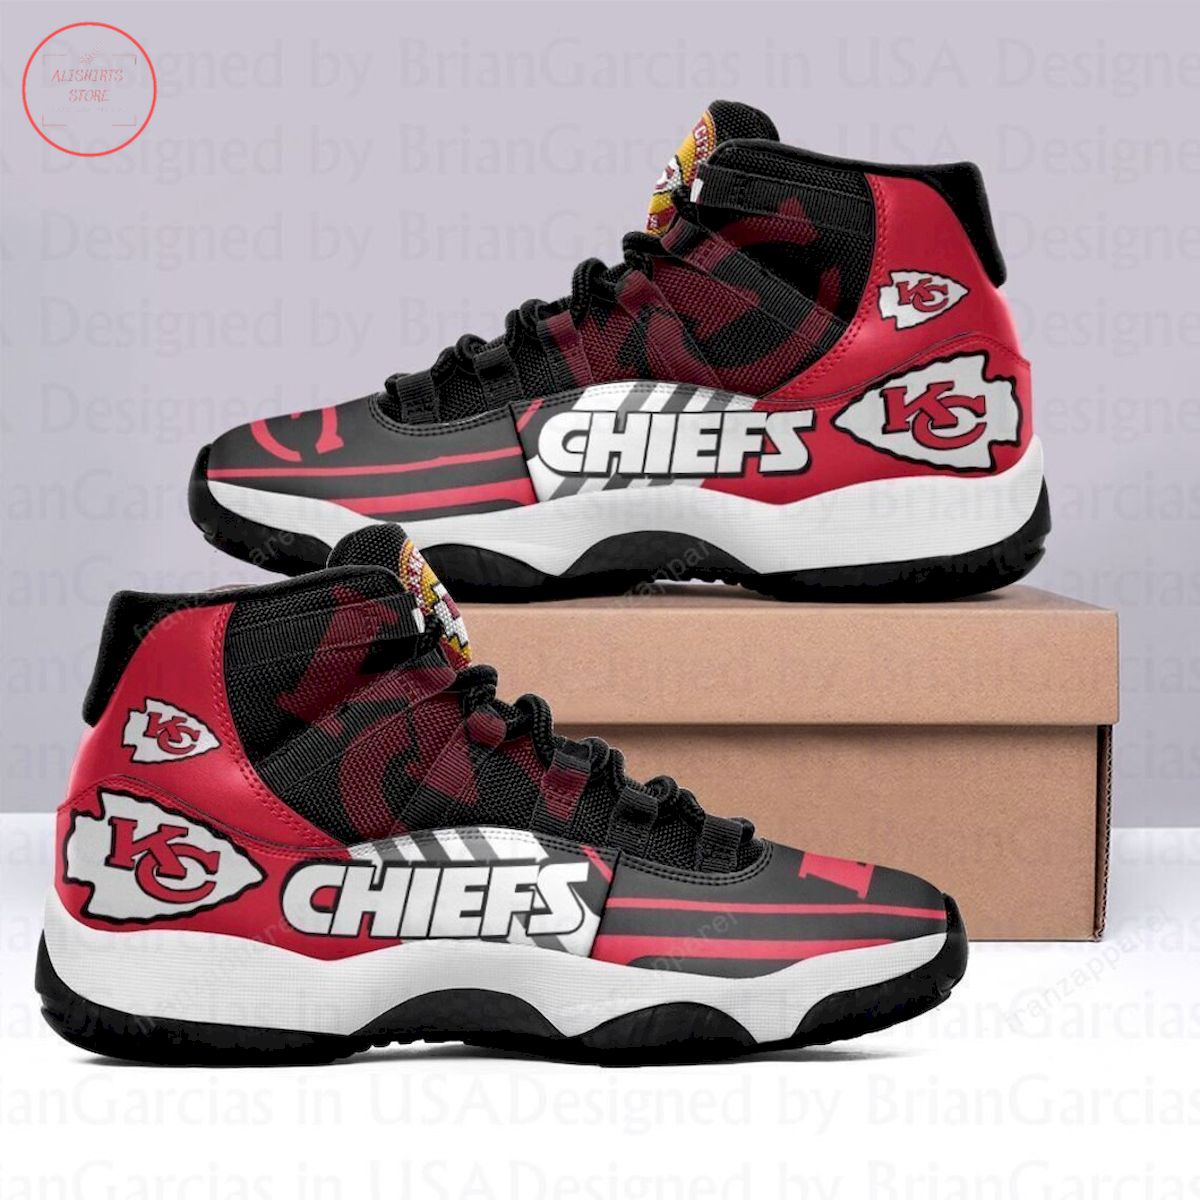 Kansas City Chiefs Air Jordan 11 Sneakers